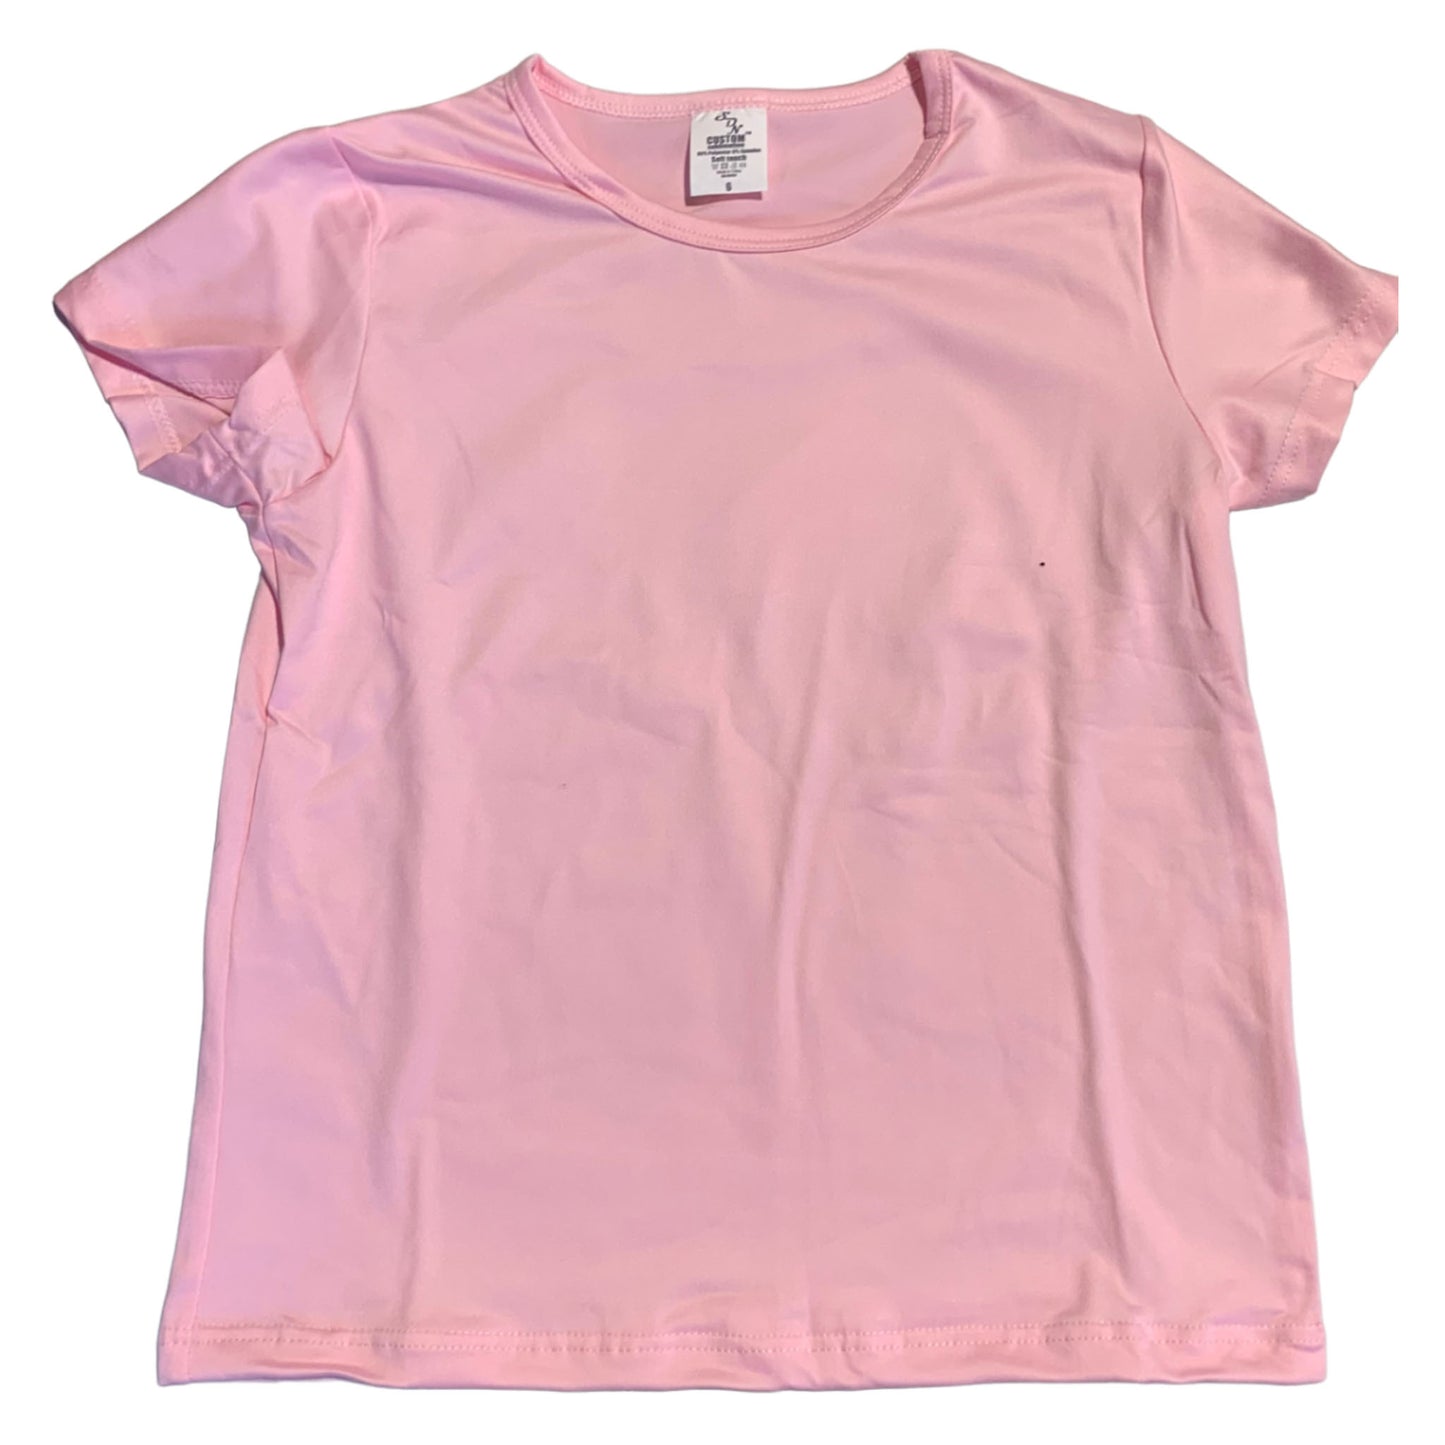 Lot de 5 t-shirts par sublimation pour enfants, rose (95 % polyester, 5 % élasthanne), toucher coton super doux.